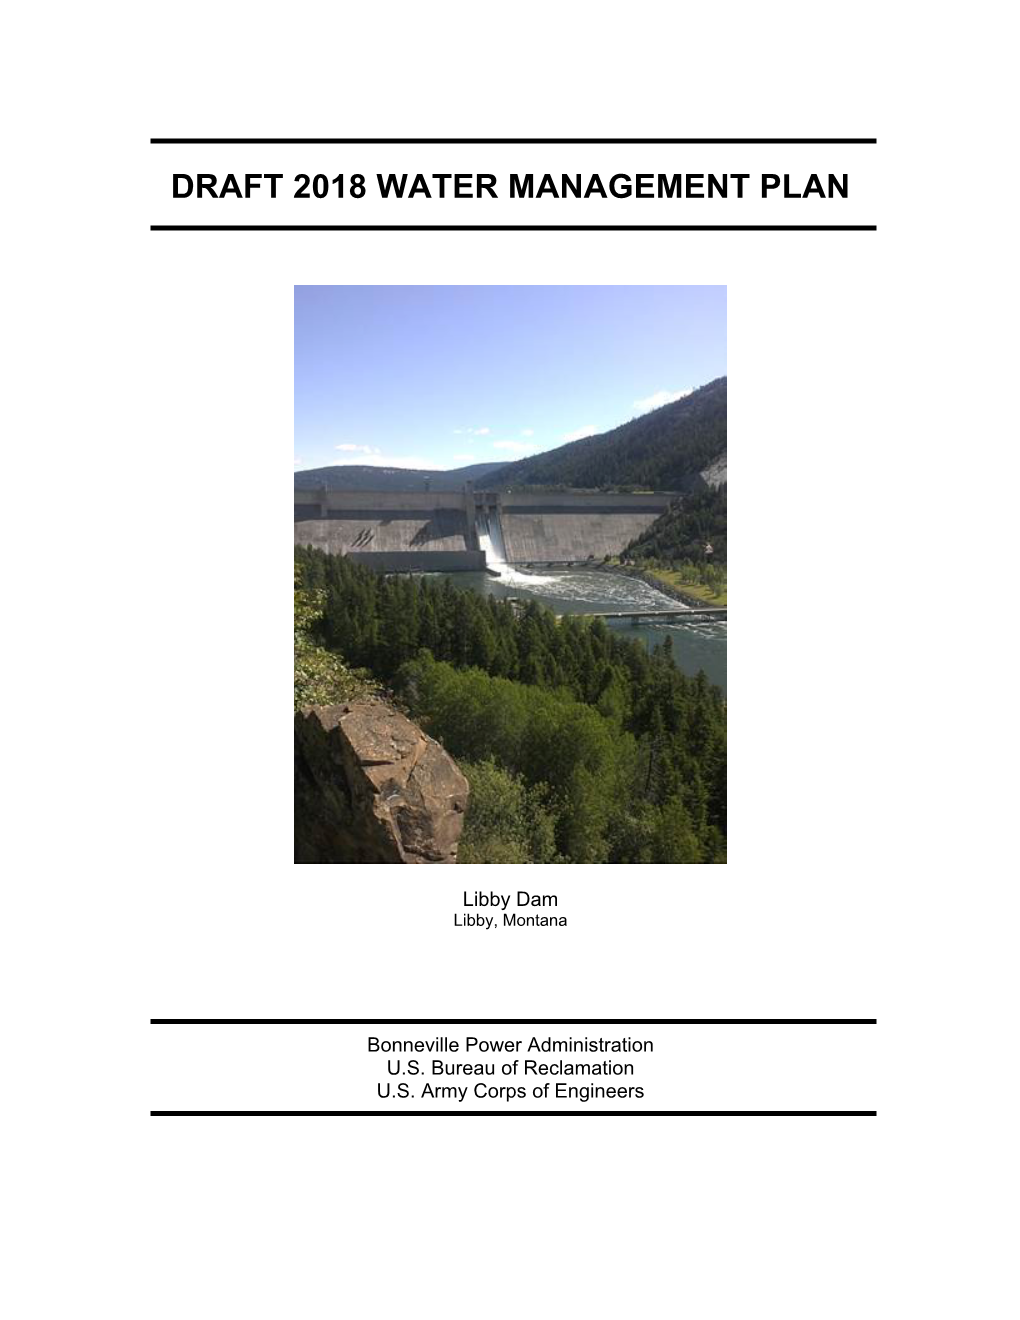 Draft 2018 Water Management Plan